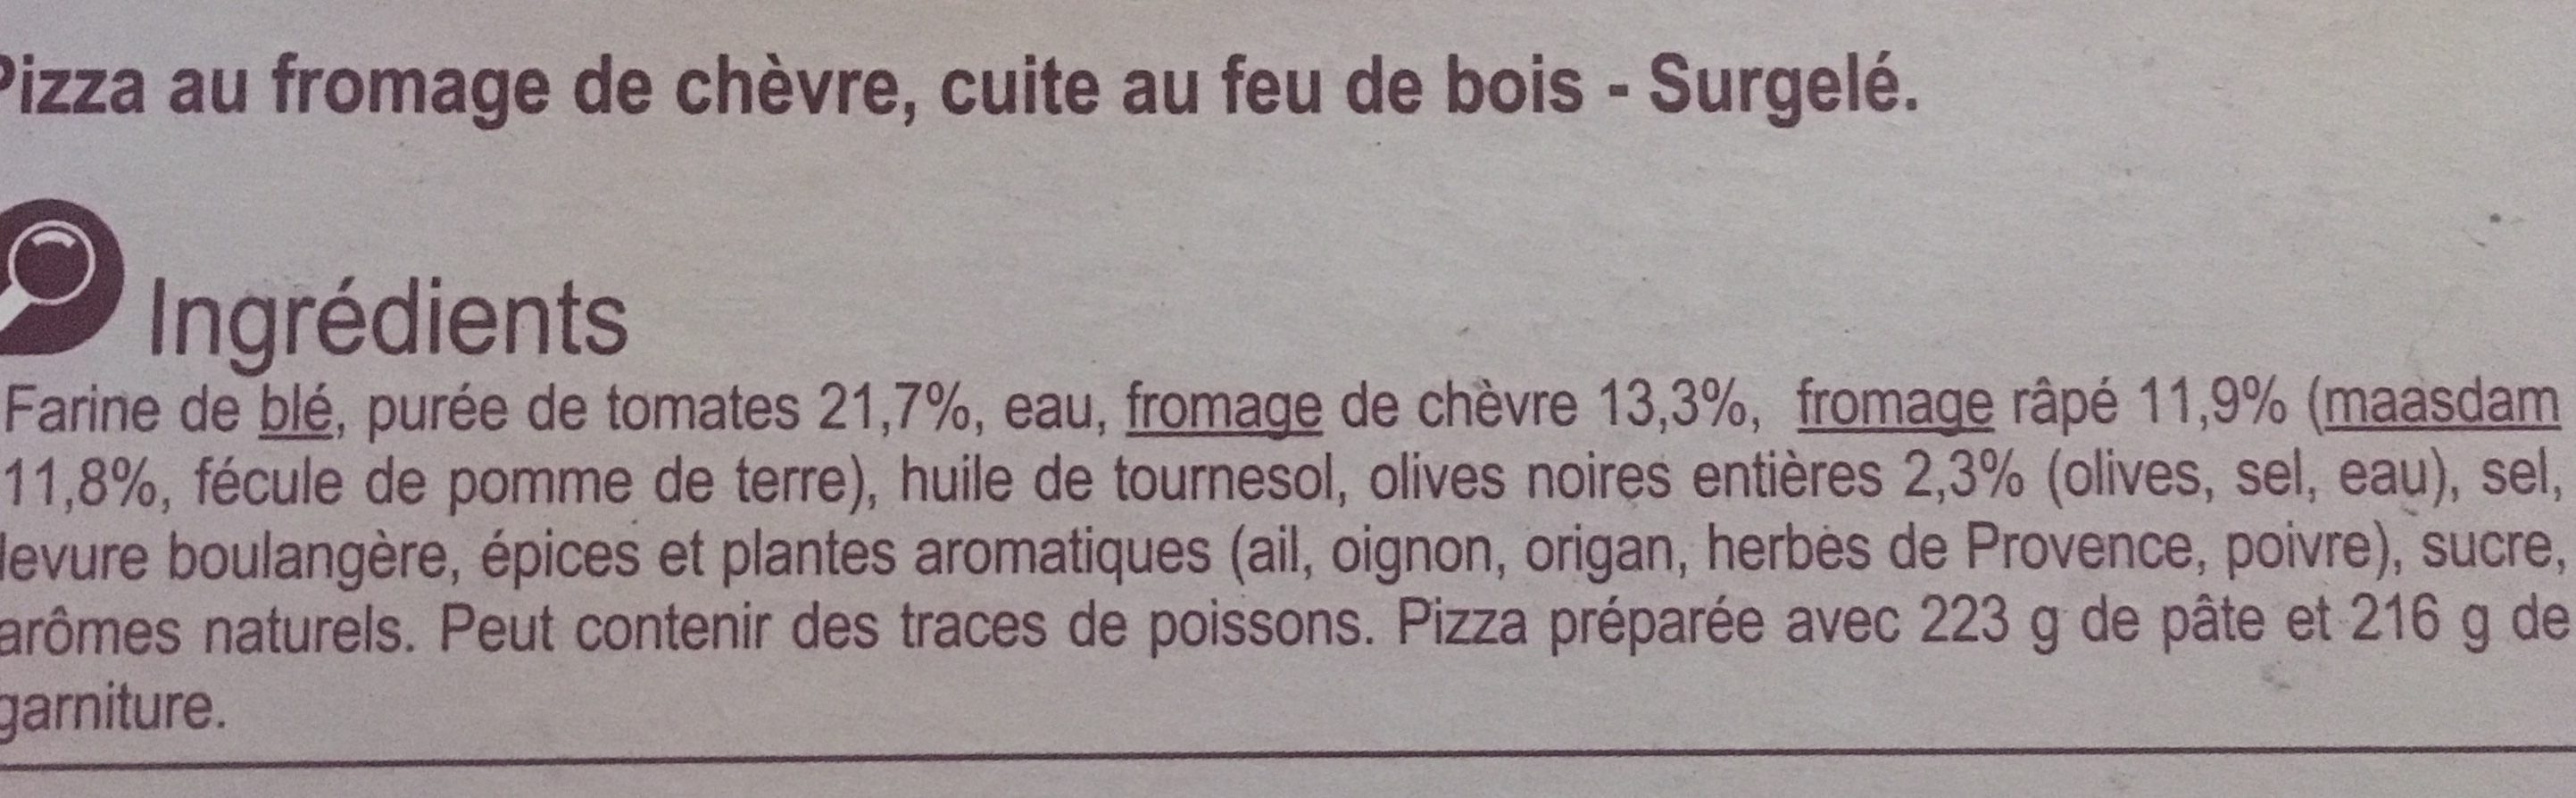 Pizza cuite au FEU DE BOIS chèvre - Ingrédients